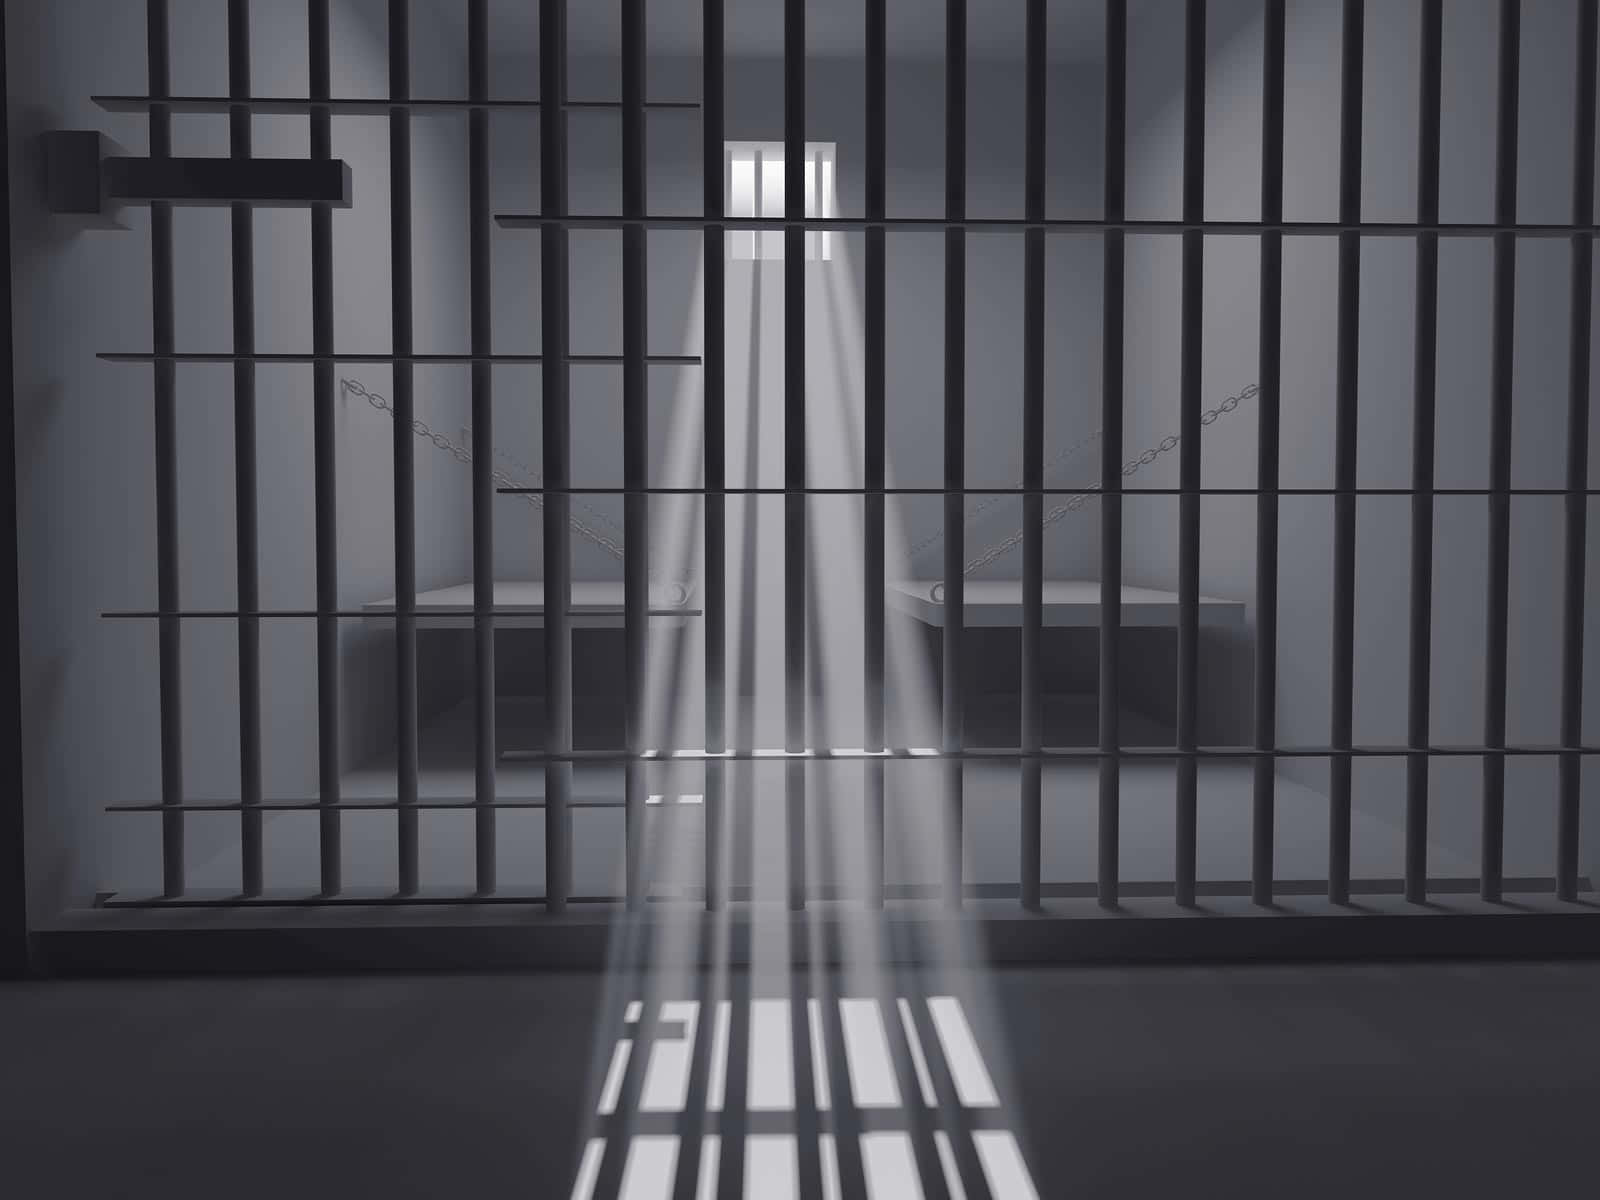 Unavista All'interno Di Una Cella Di Prigione